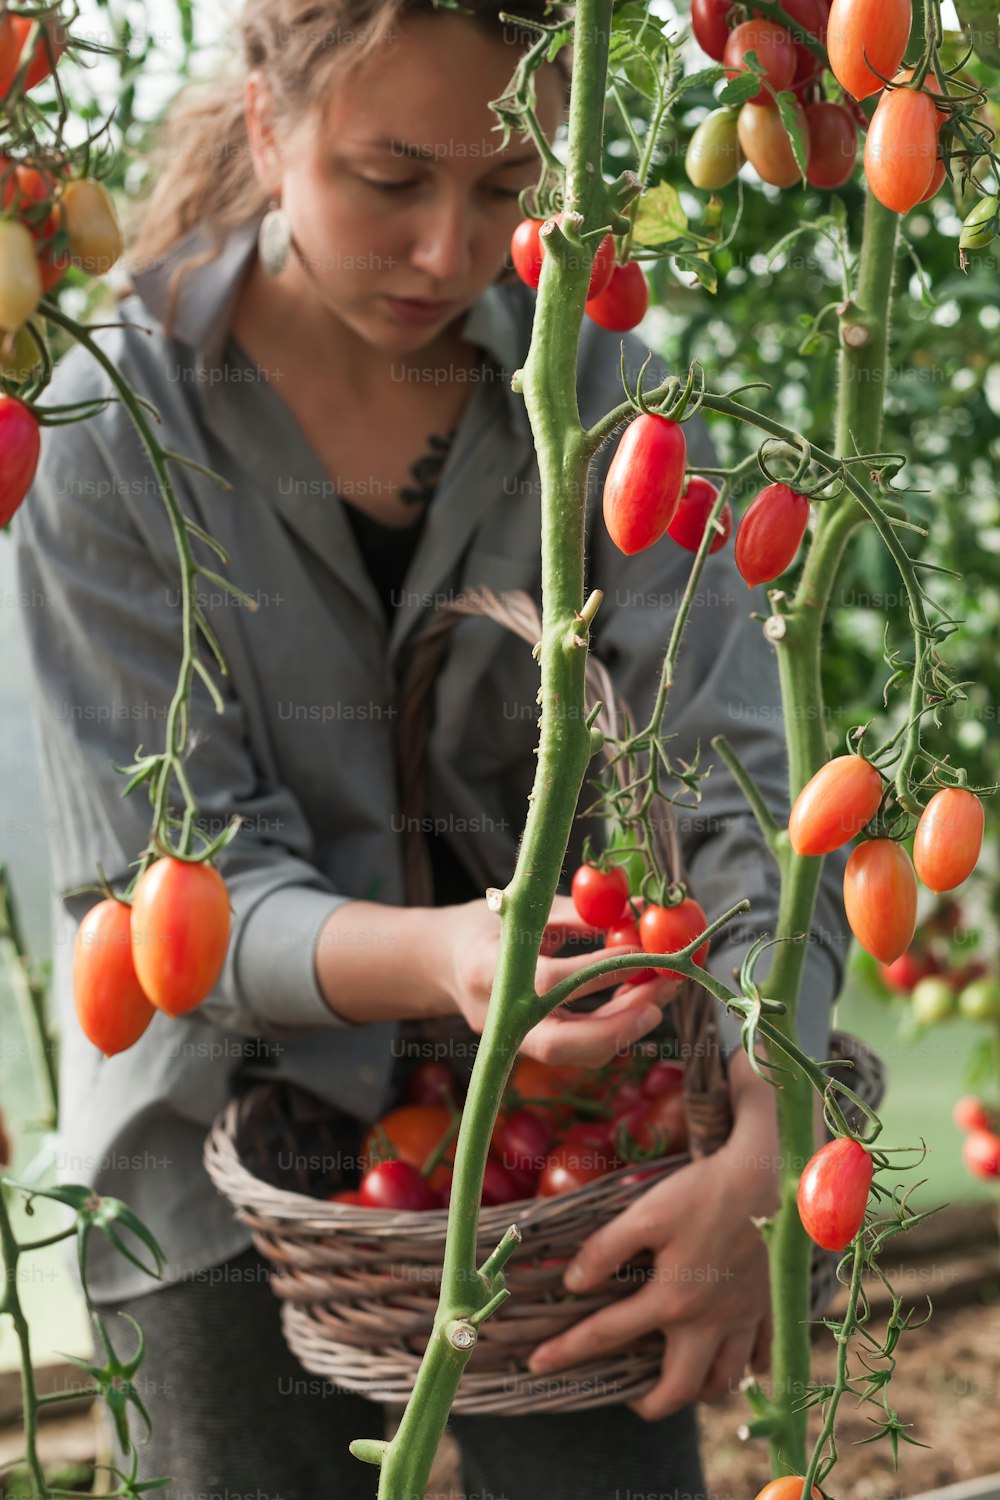 Una mujer sosteniendo una canasta de tomates en un invernadero